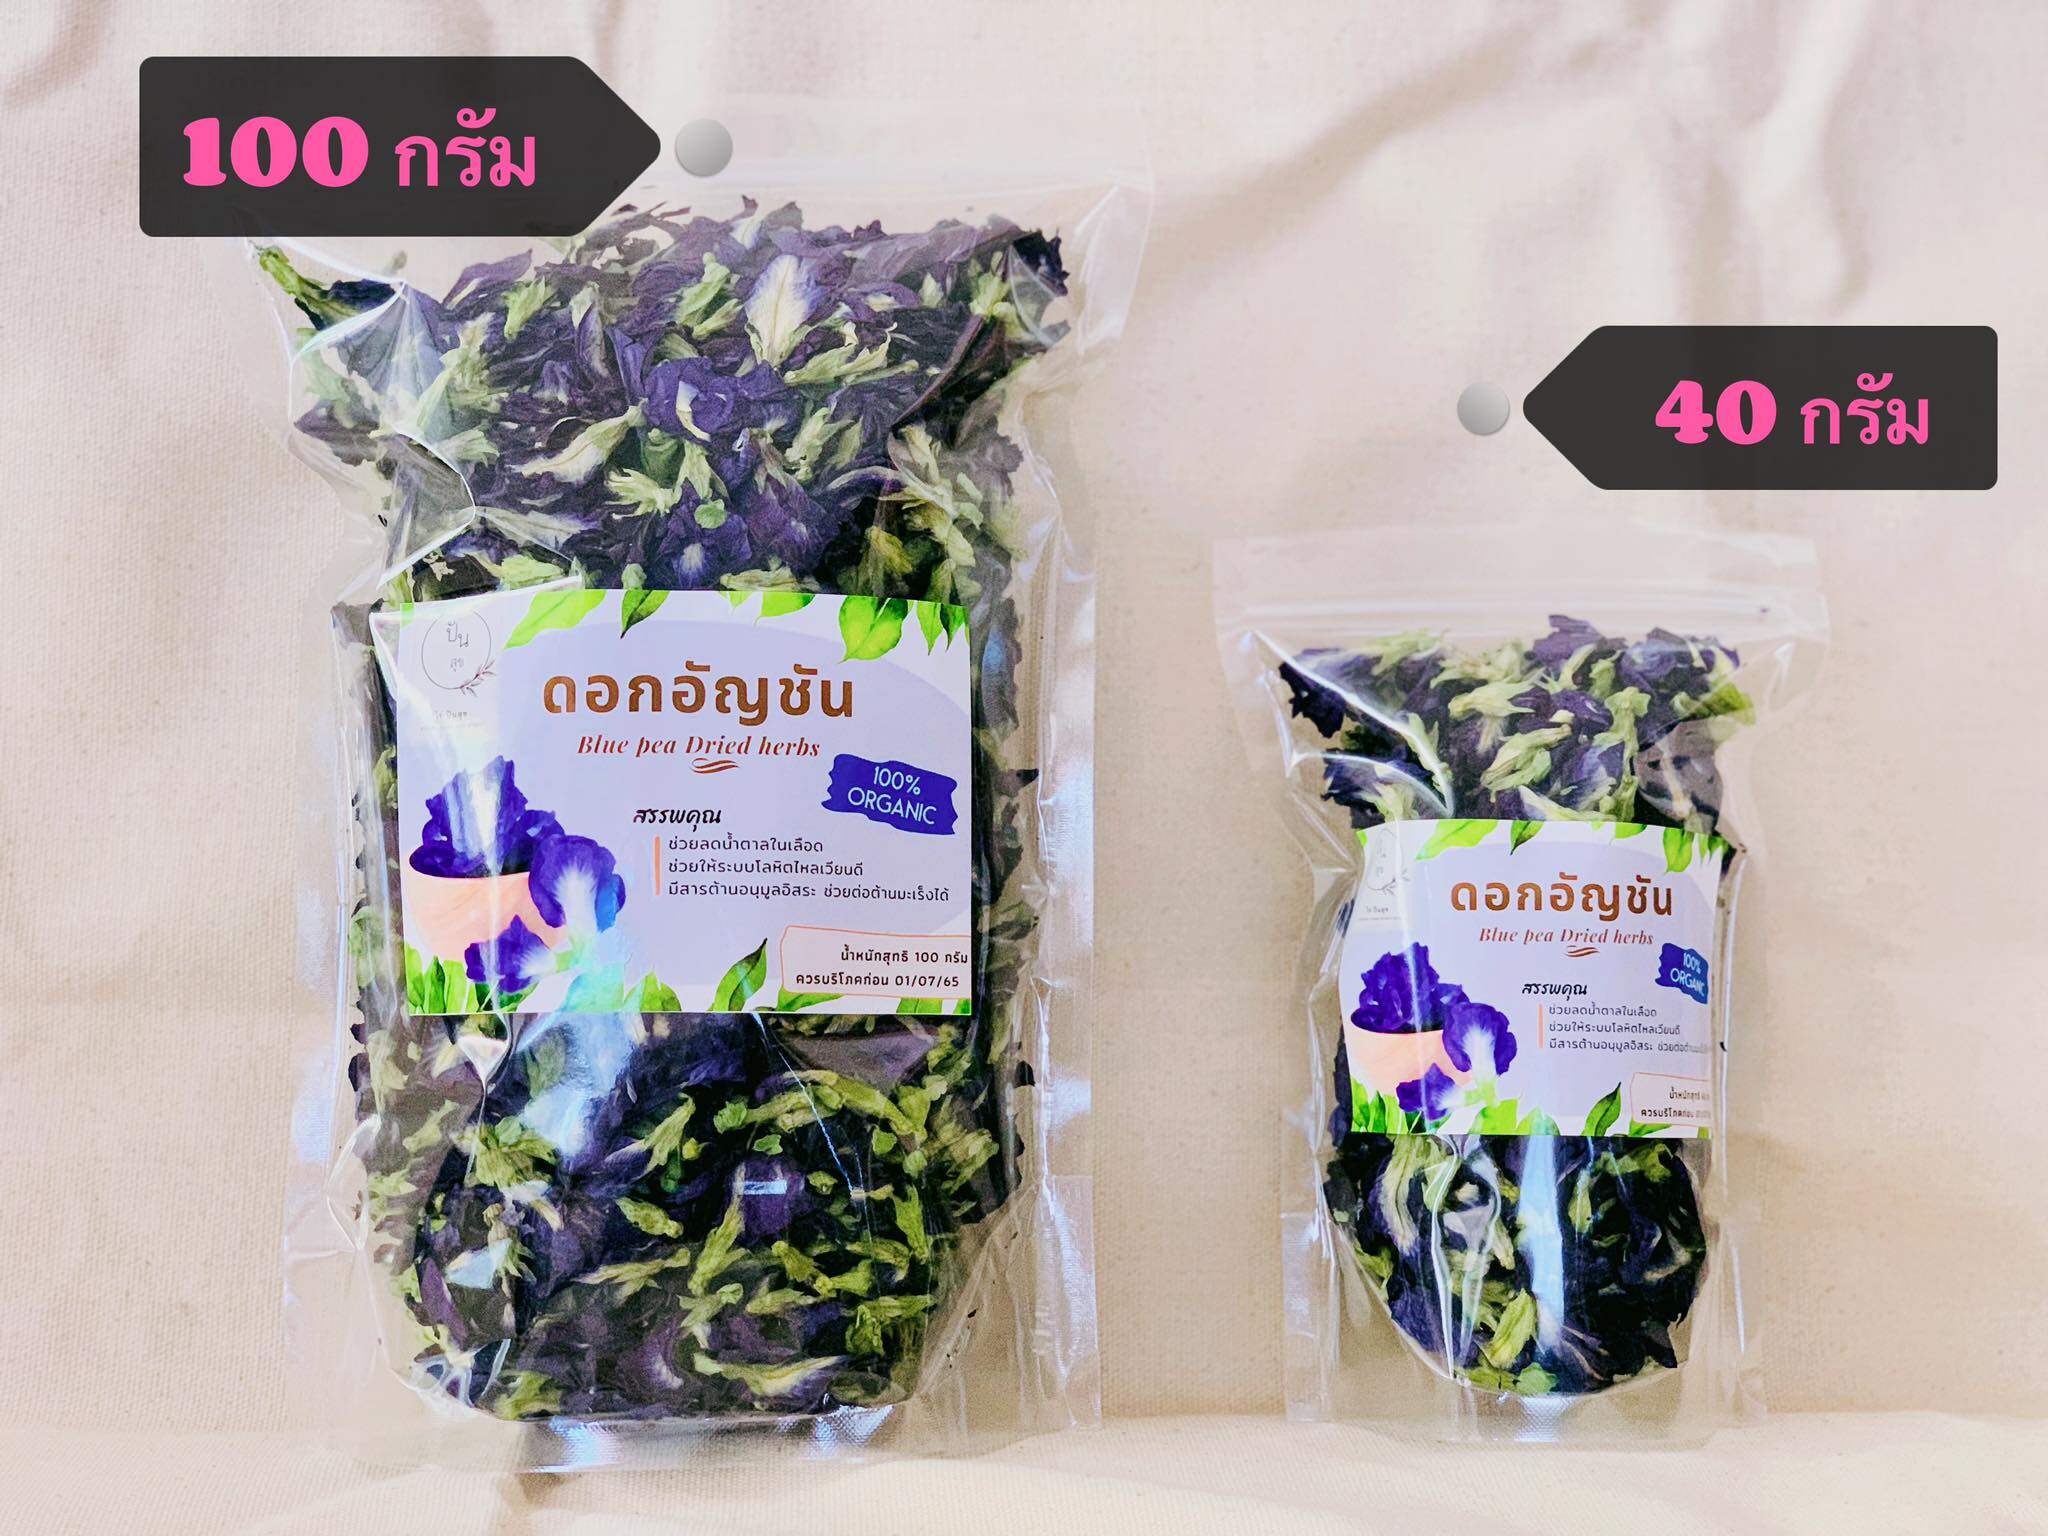 ข้อมูลเพิ่มเติมของ ดอกอัญชันอบแห้ง ปลอดสารเคมี เกรด A ขนาด 100 กรัม Dried Blue Bfly Pea,| Organic, Natural, Healthy Drink